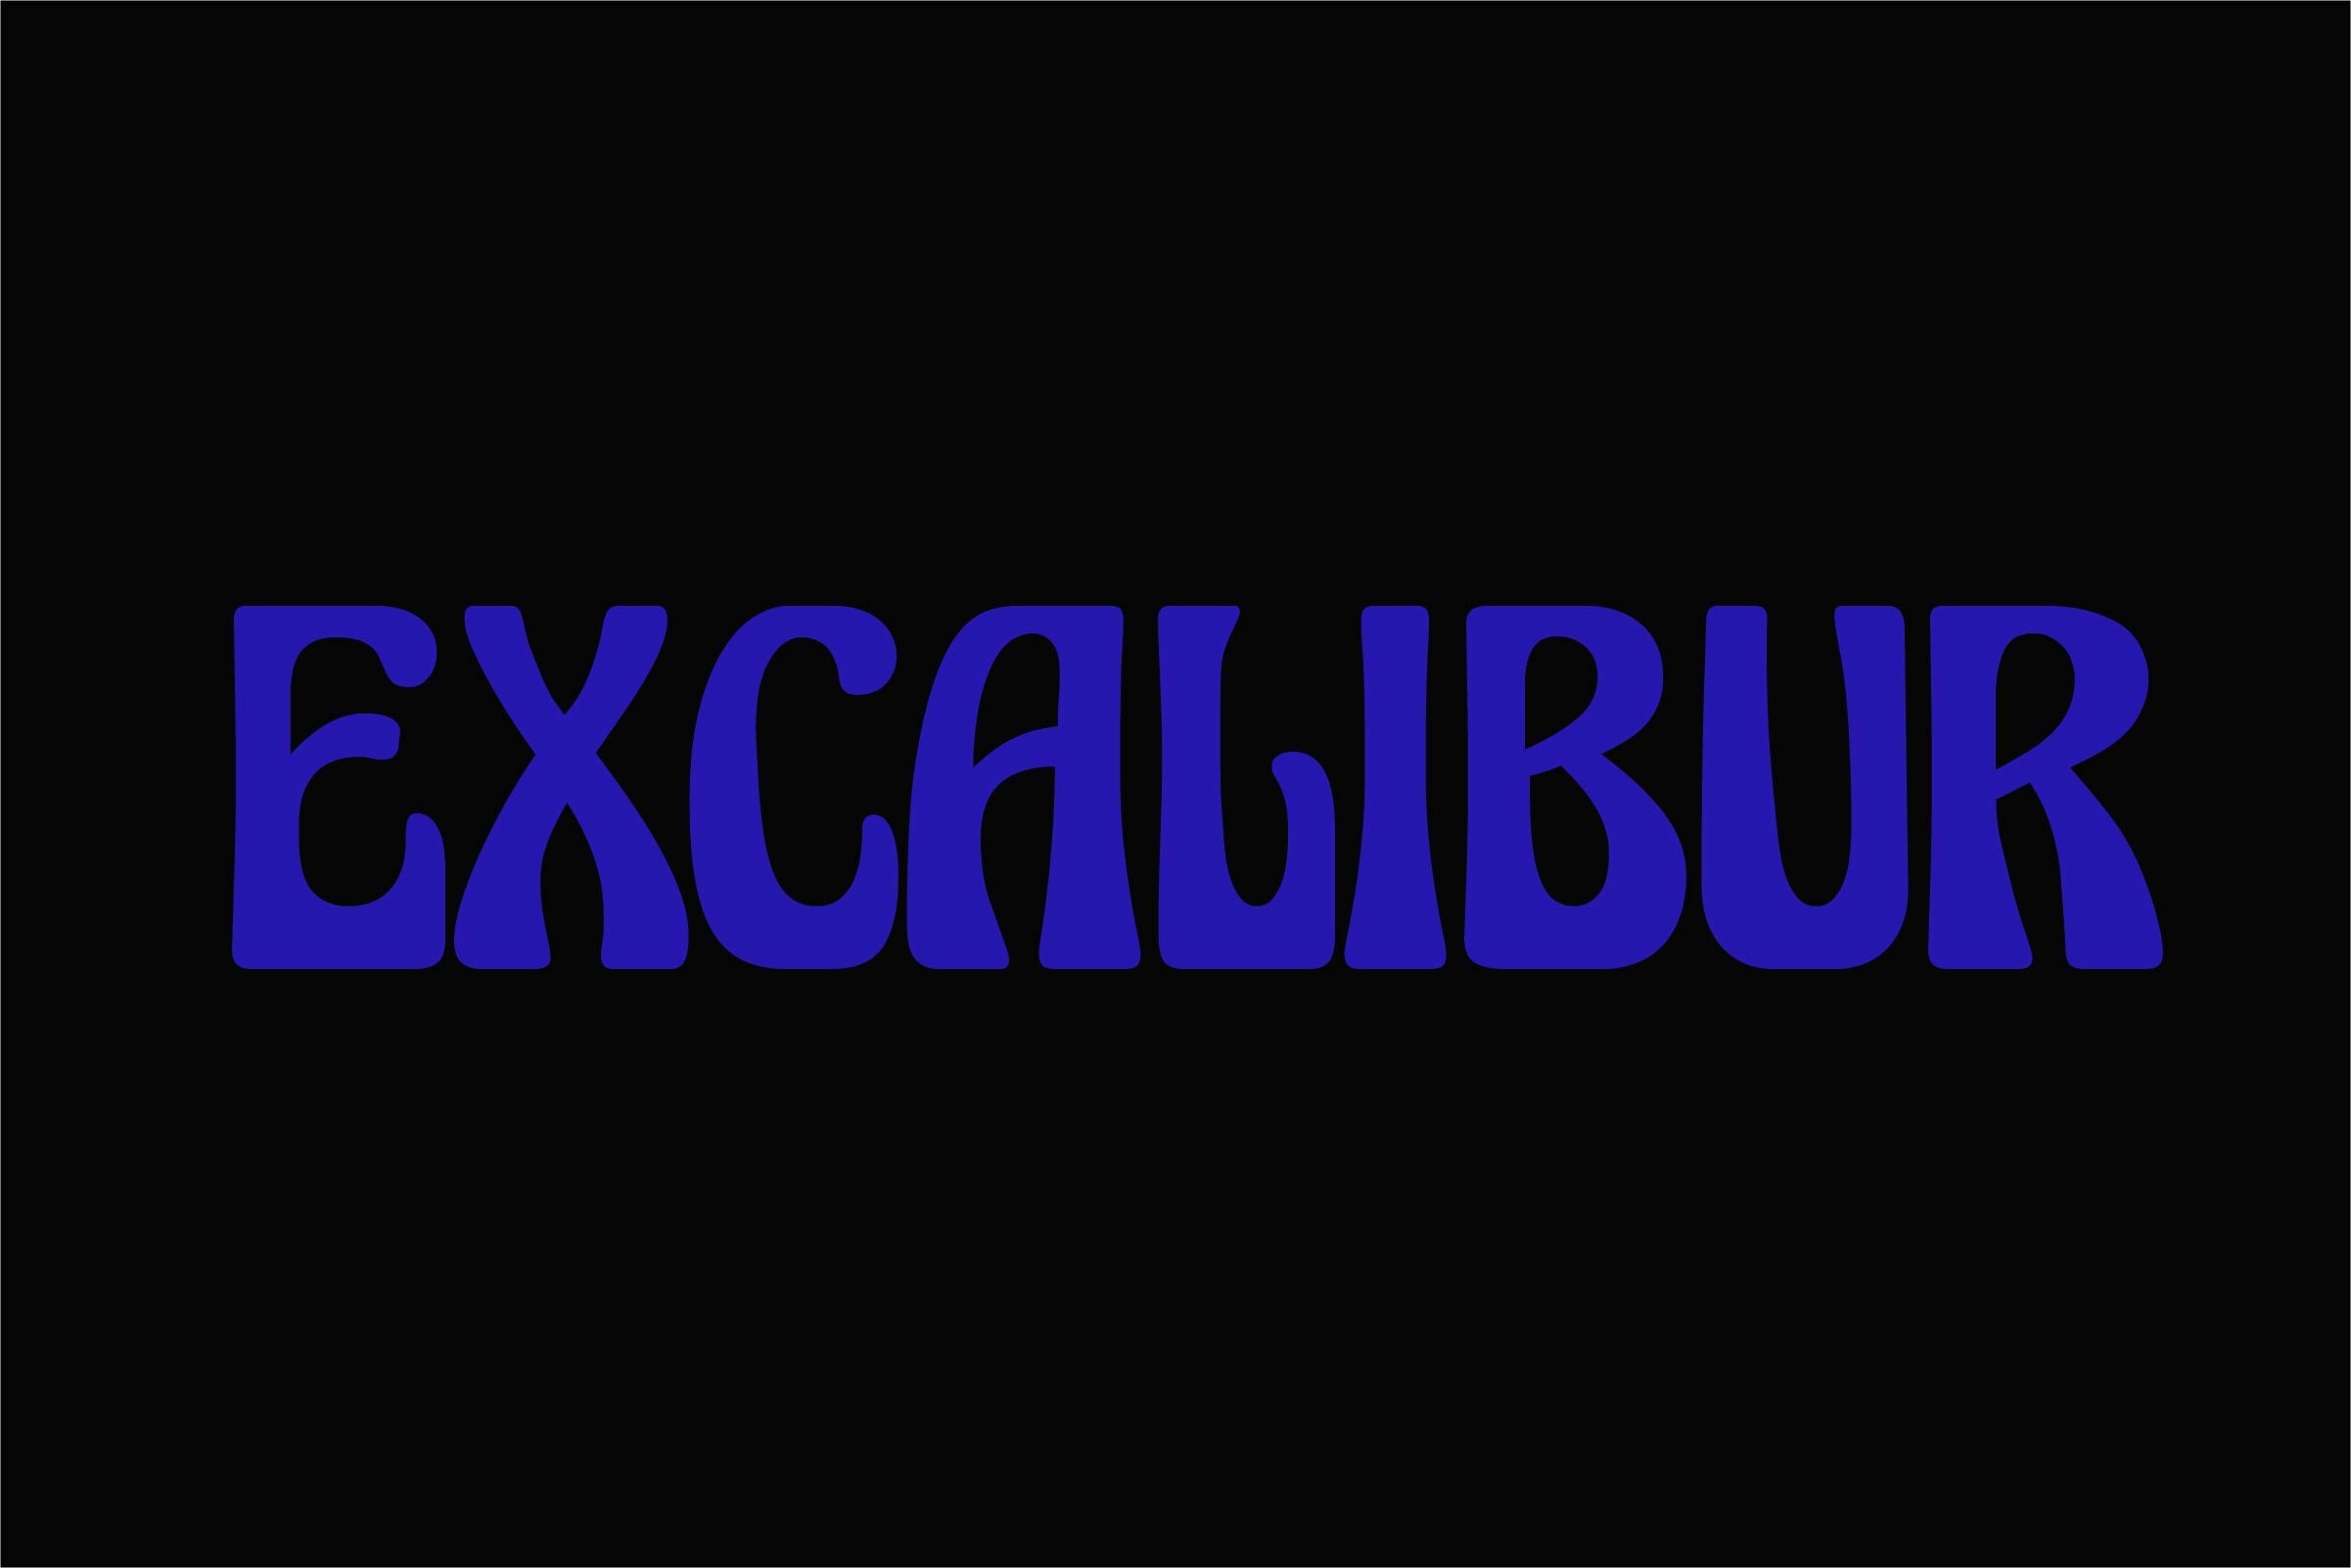 Beispiel einer Excalibur Medium-Schriftart